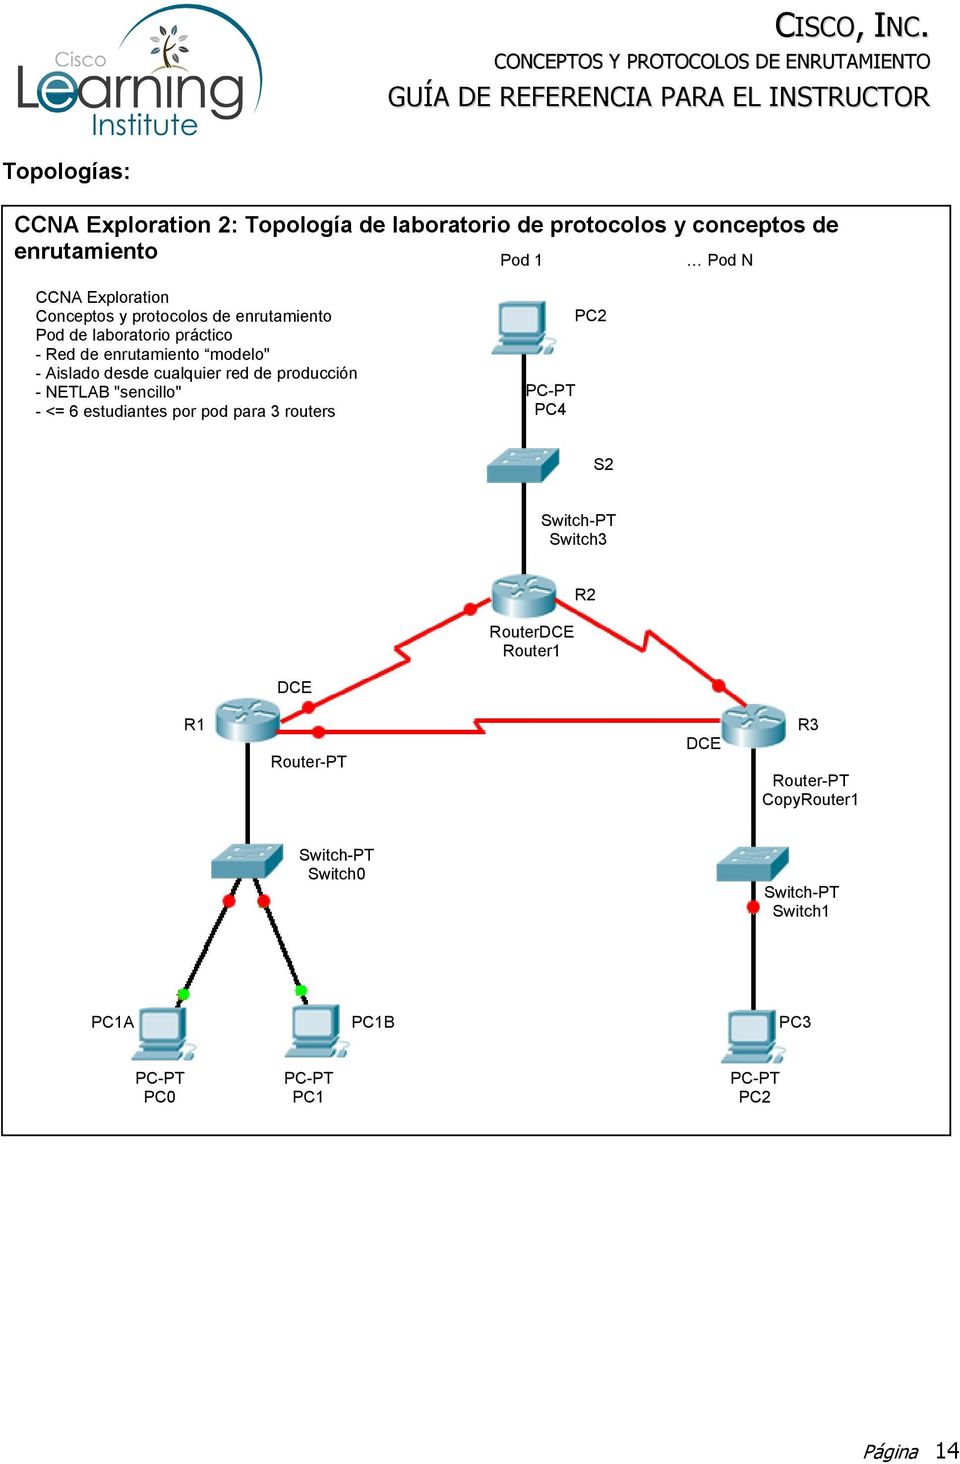 producción - NETLAB "sencillo" - <= 6 estudiantes por pod para 3 routers PC-PT PC4 PC2 S2 Switch-PT Switch3 RouterDCE Router1 R2